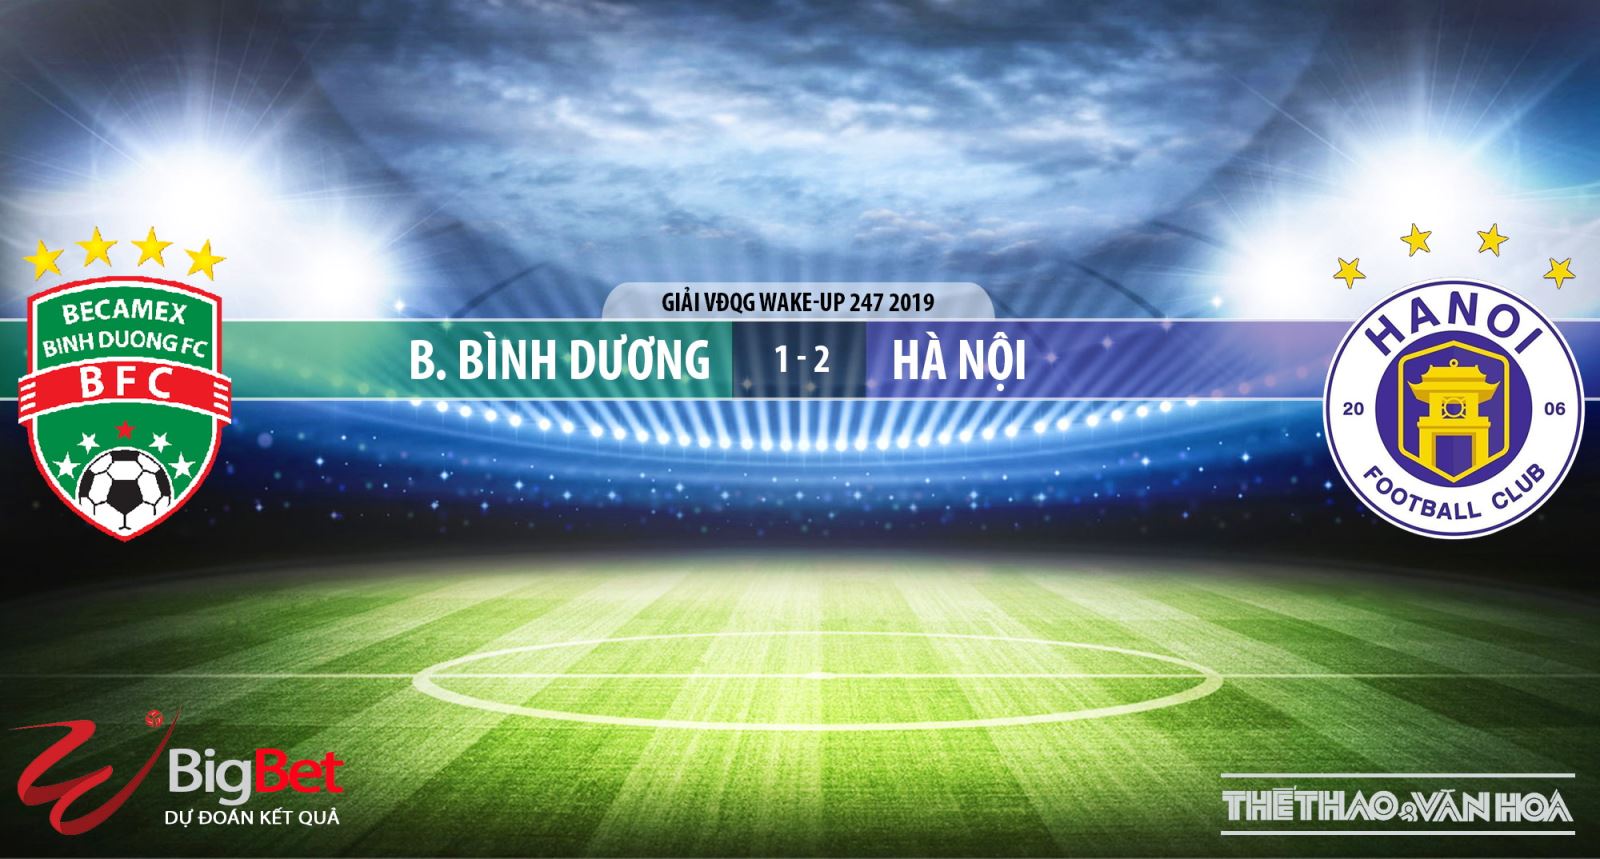 Becamex Bình Dương vs Hà Nội, trực tiếp bóng đá, nhận định bóng đá Becamex Bình Dương vs Hà Nội, nhận định Becamex Bình Dương vs Hà Nội, V-League 2019, BĐTV, VTV6, FPT Play